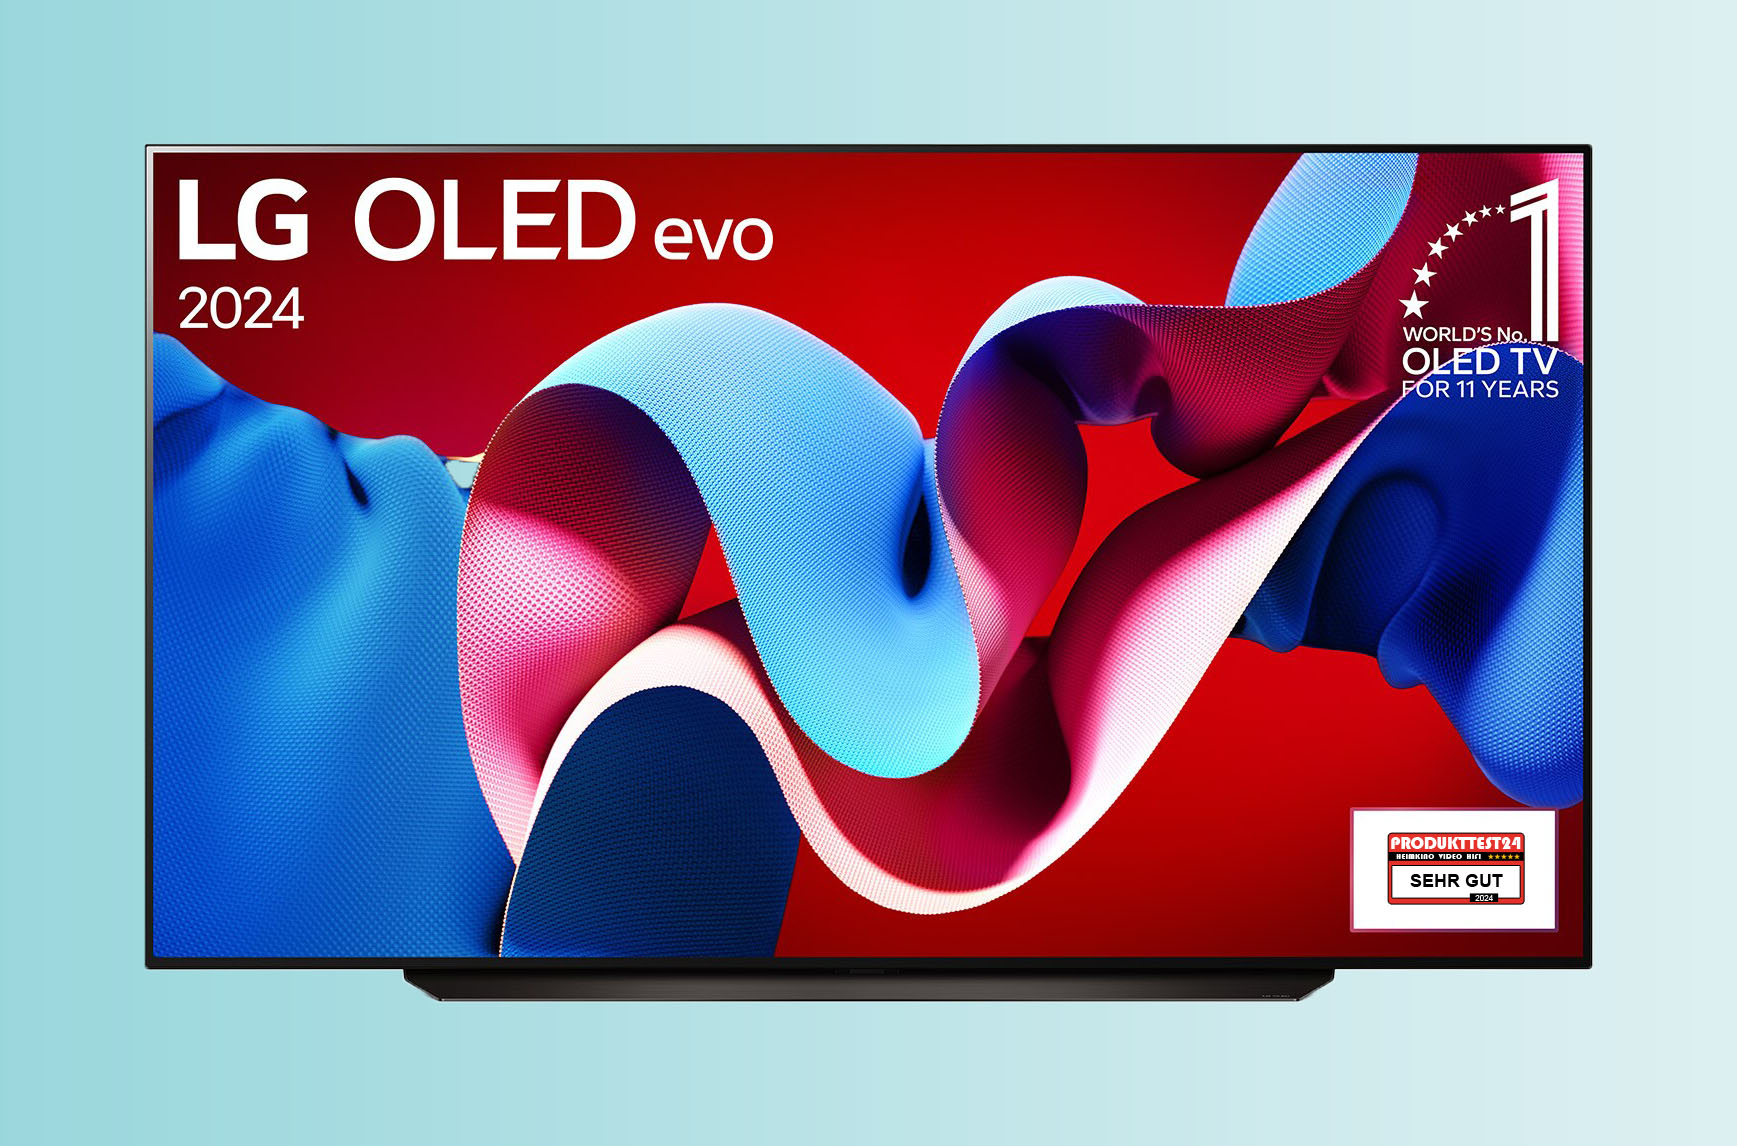 Der größte OLED-Fernseher aus der aktuellen LG OLED C4 Serie hat eine Bilddiagonale von stolzen 211 cm.